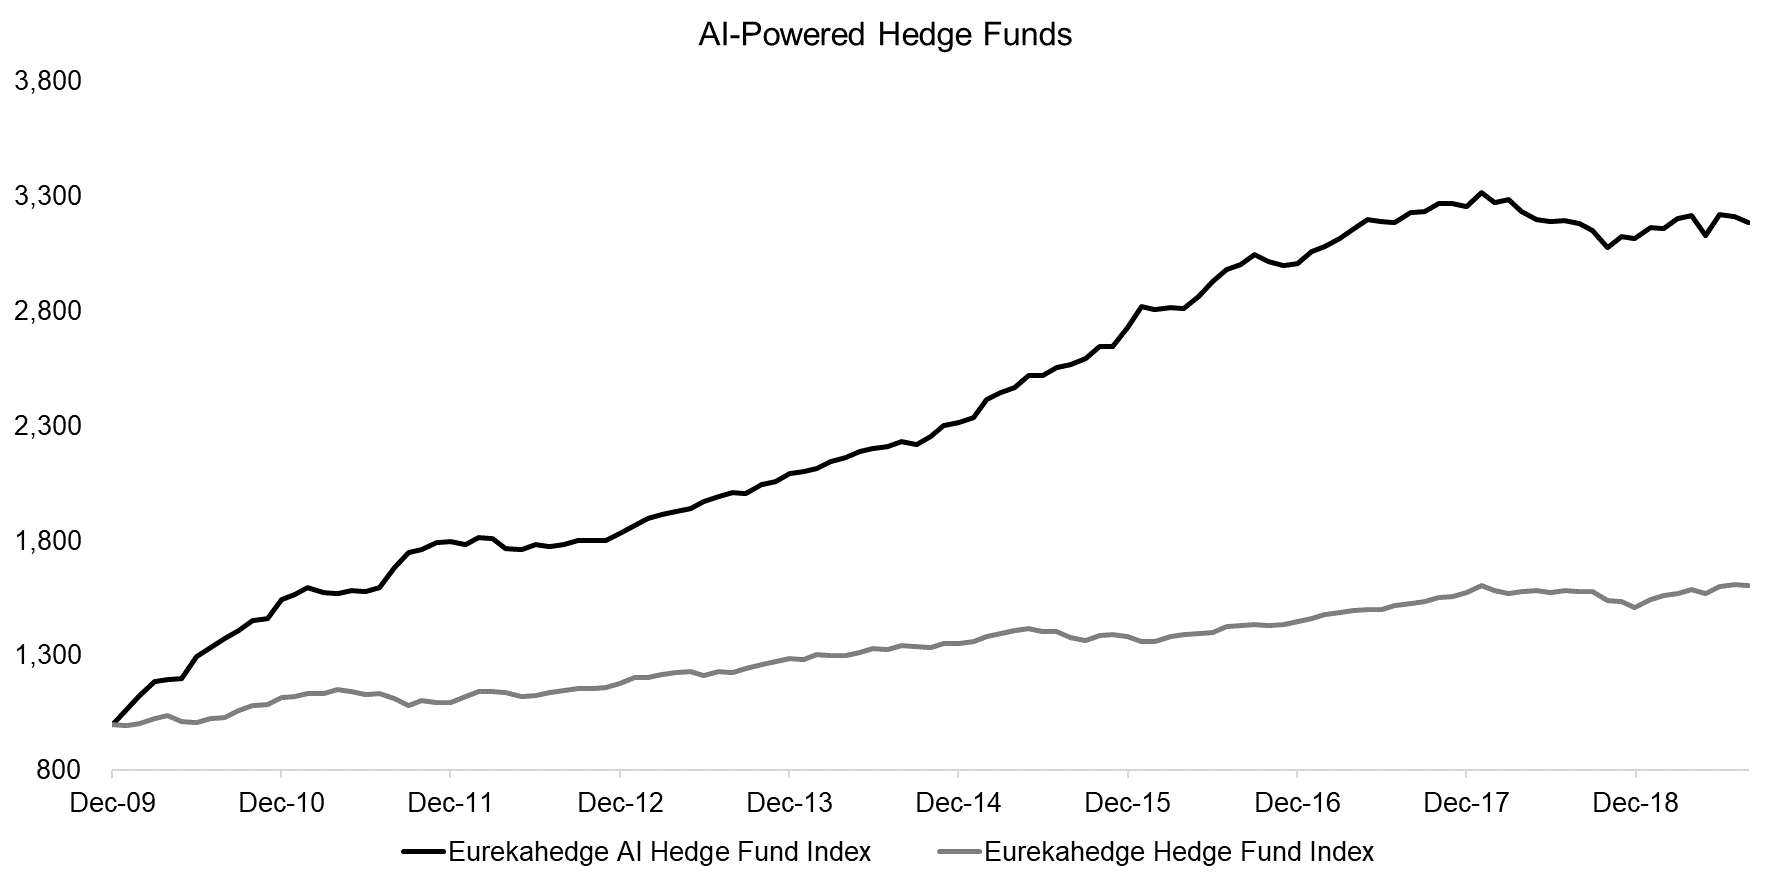 AI-Powered Hedge Funds